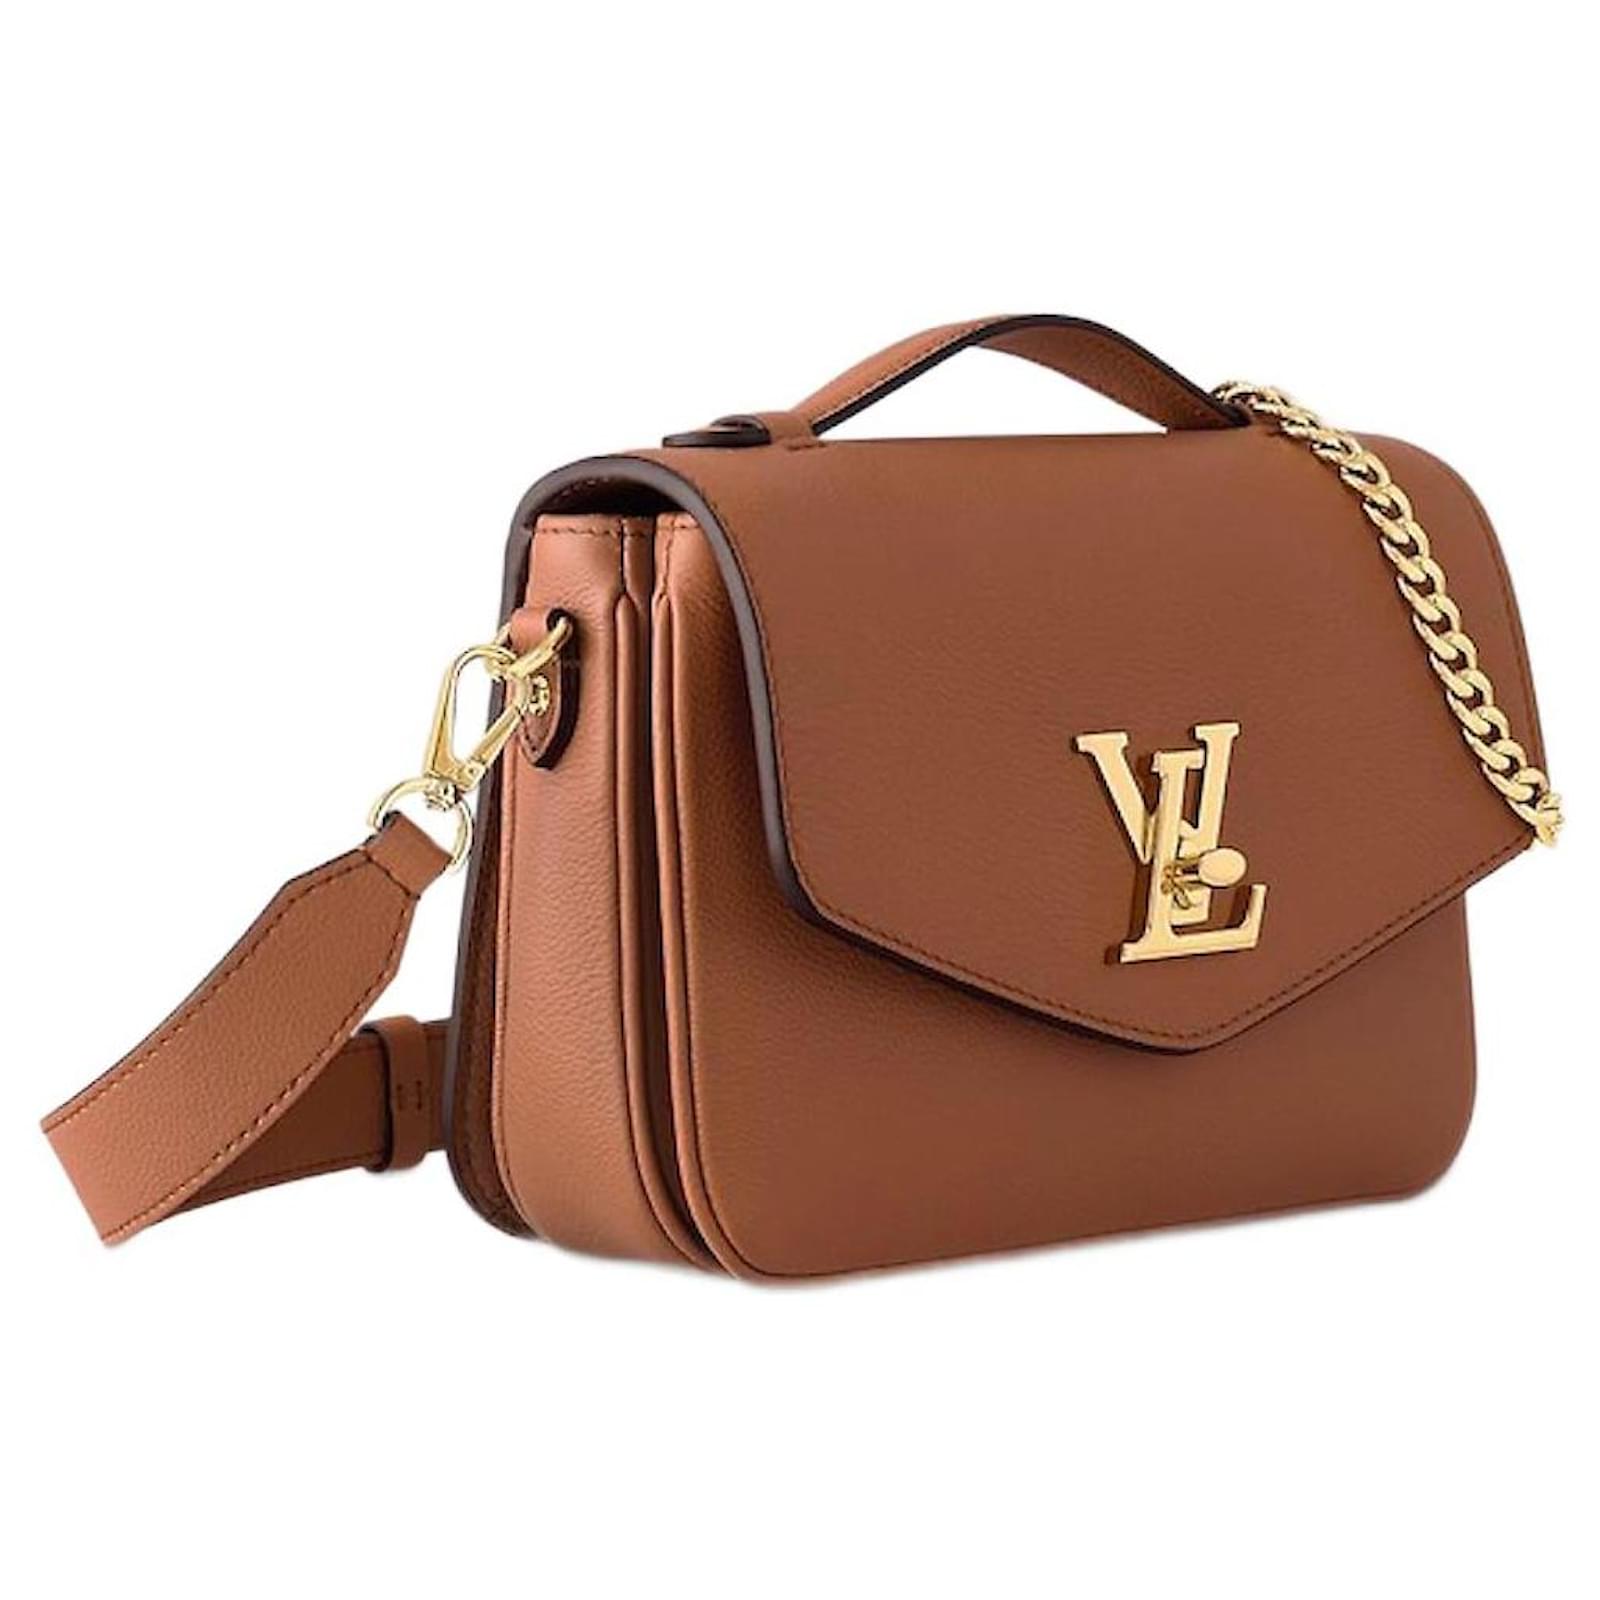 Handbags Louis Vuitton LV Oxford Handbag New